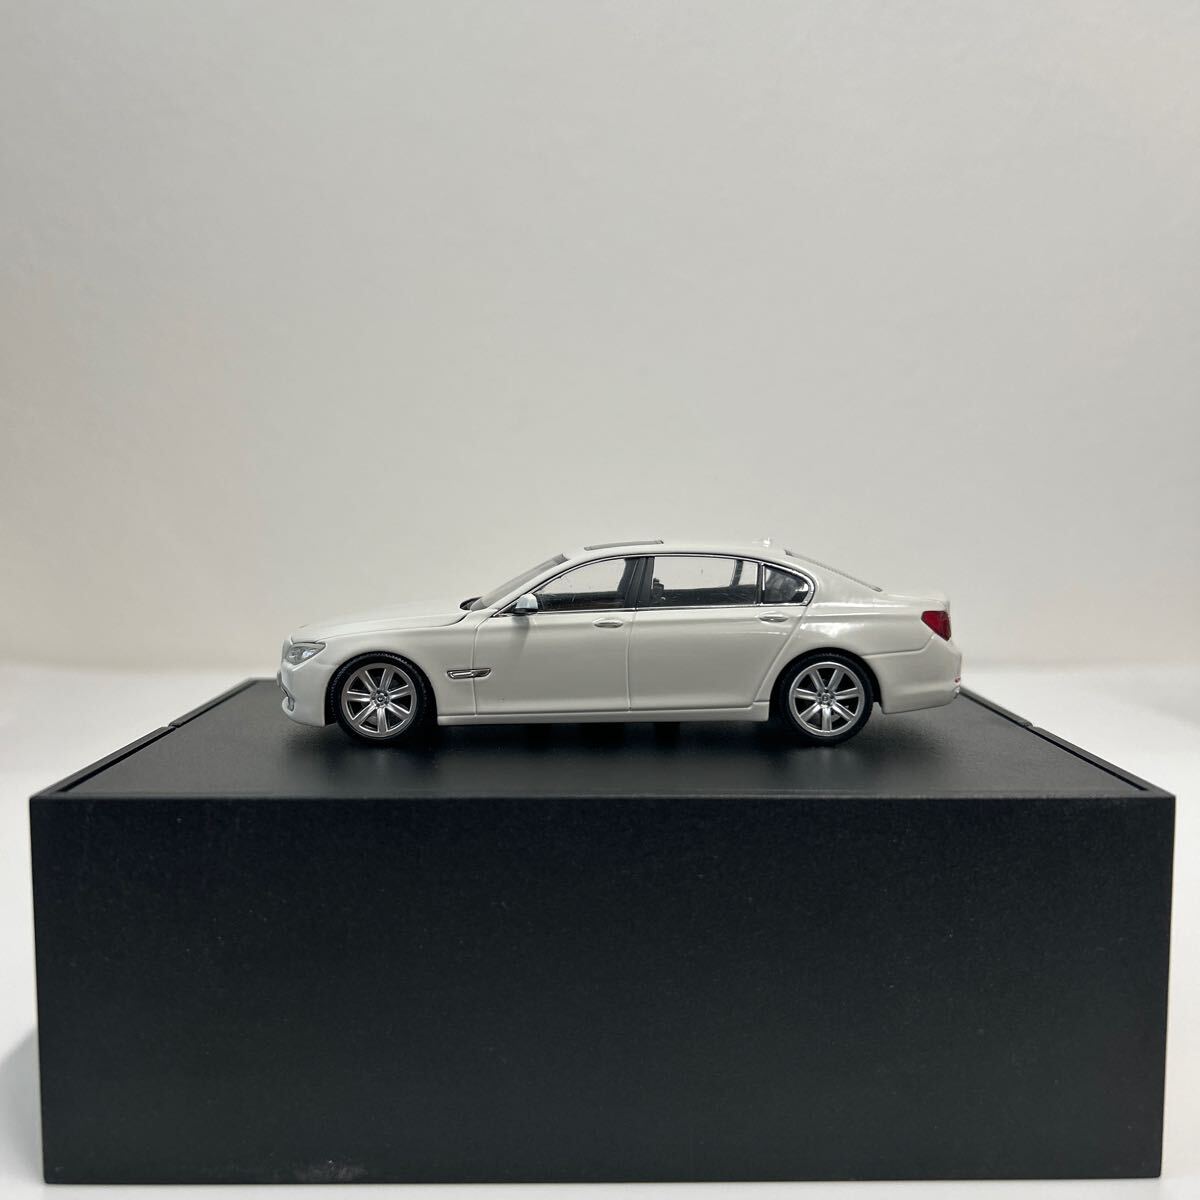 BMW дилер специальный заказ PMA 1/43 750Li F02 MINICHAMPS 7 серии белый миникар модель машина 